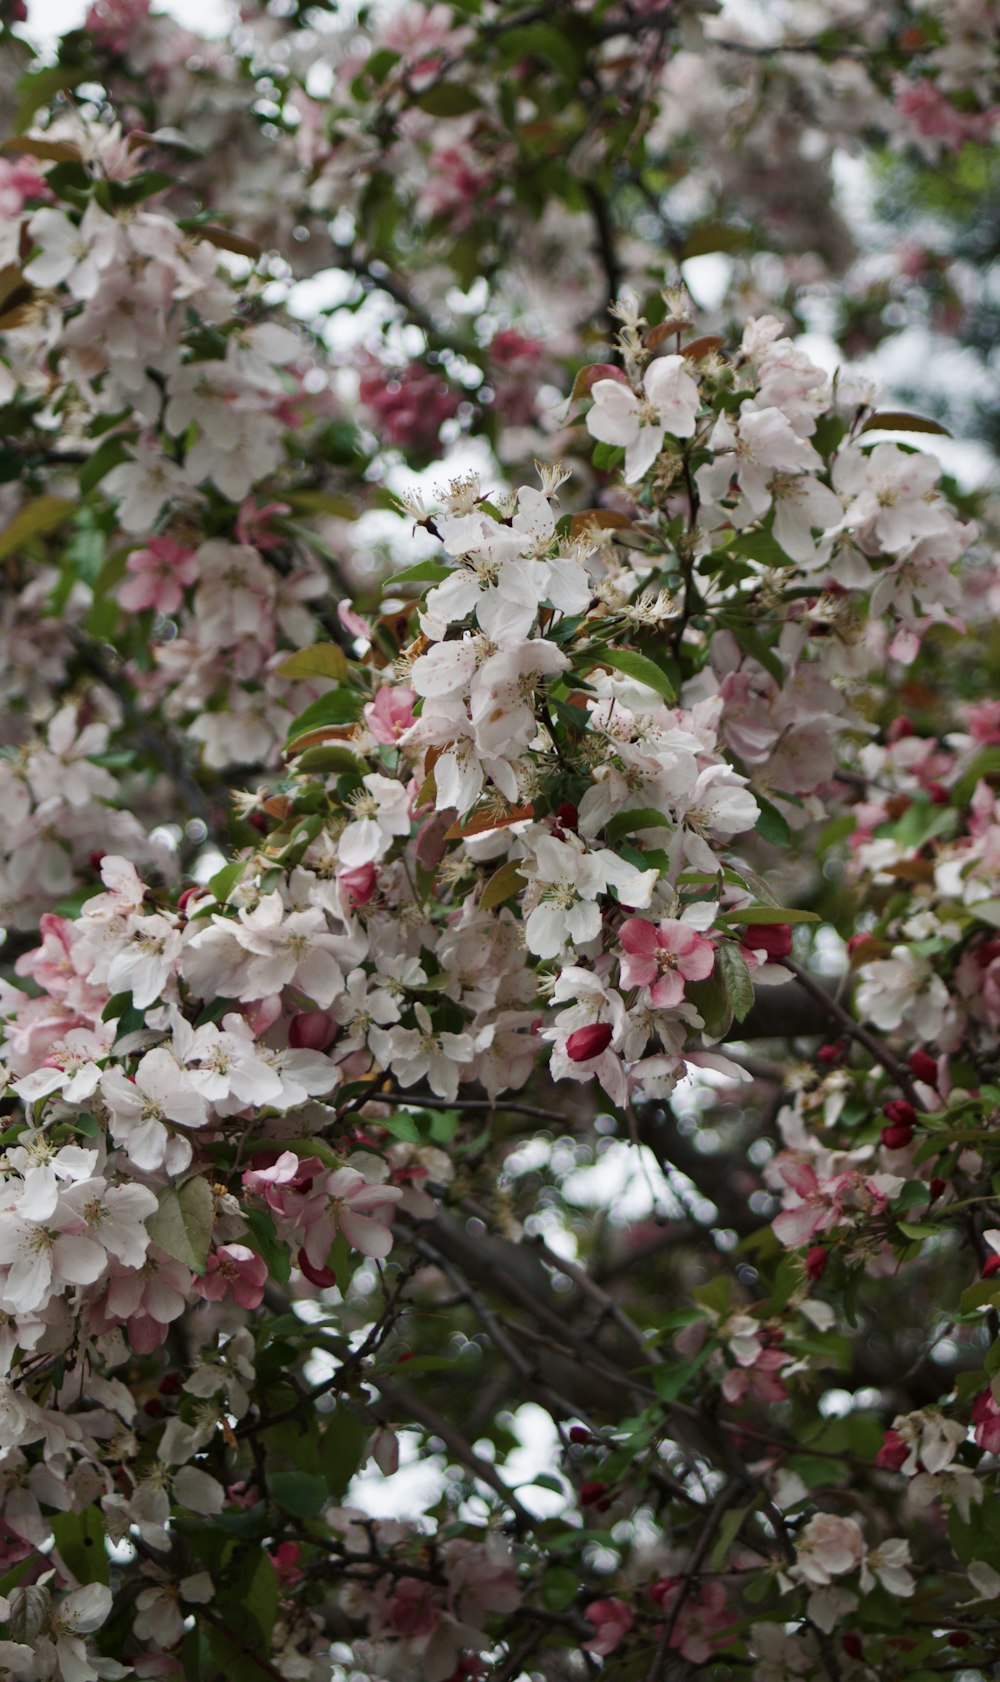 Un arbre rempli de nombreuses fleurs roses et blanches